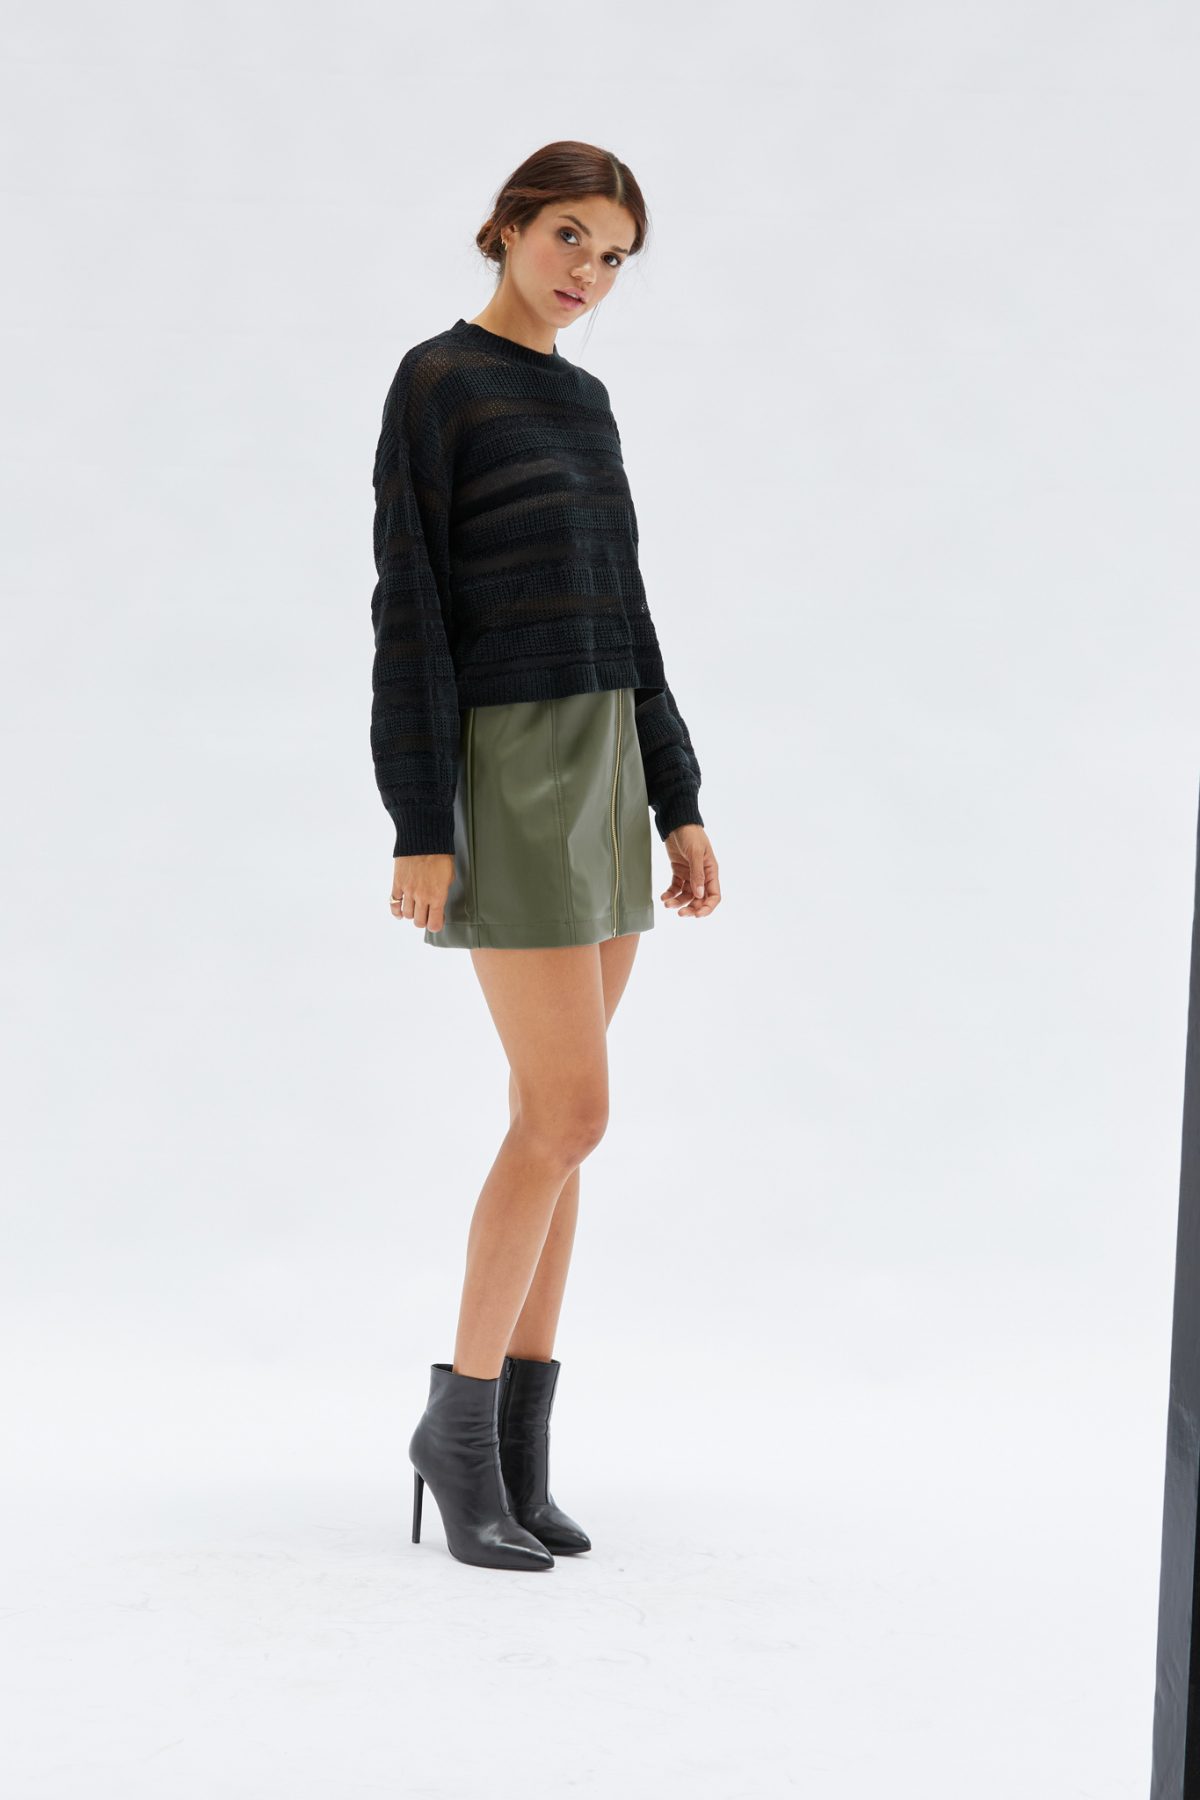 Women's Black Cut Out Mid Waist Asymmetric Hem PU Mini Skirt Zipper  Irregular Bag Hip Leather Short Skirt Half-length Skirt Wyongtao Deals -  Walmart.com